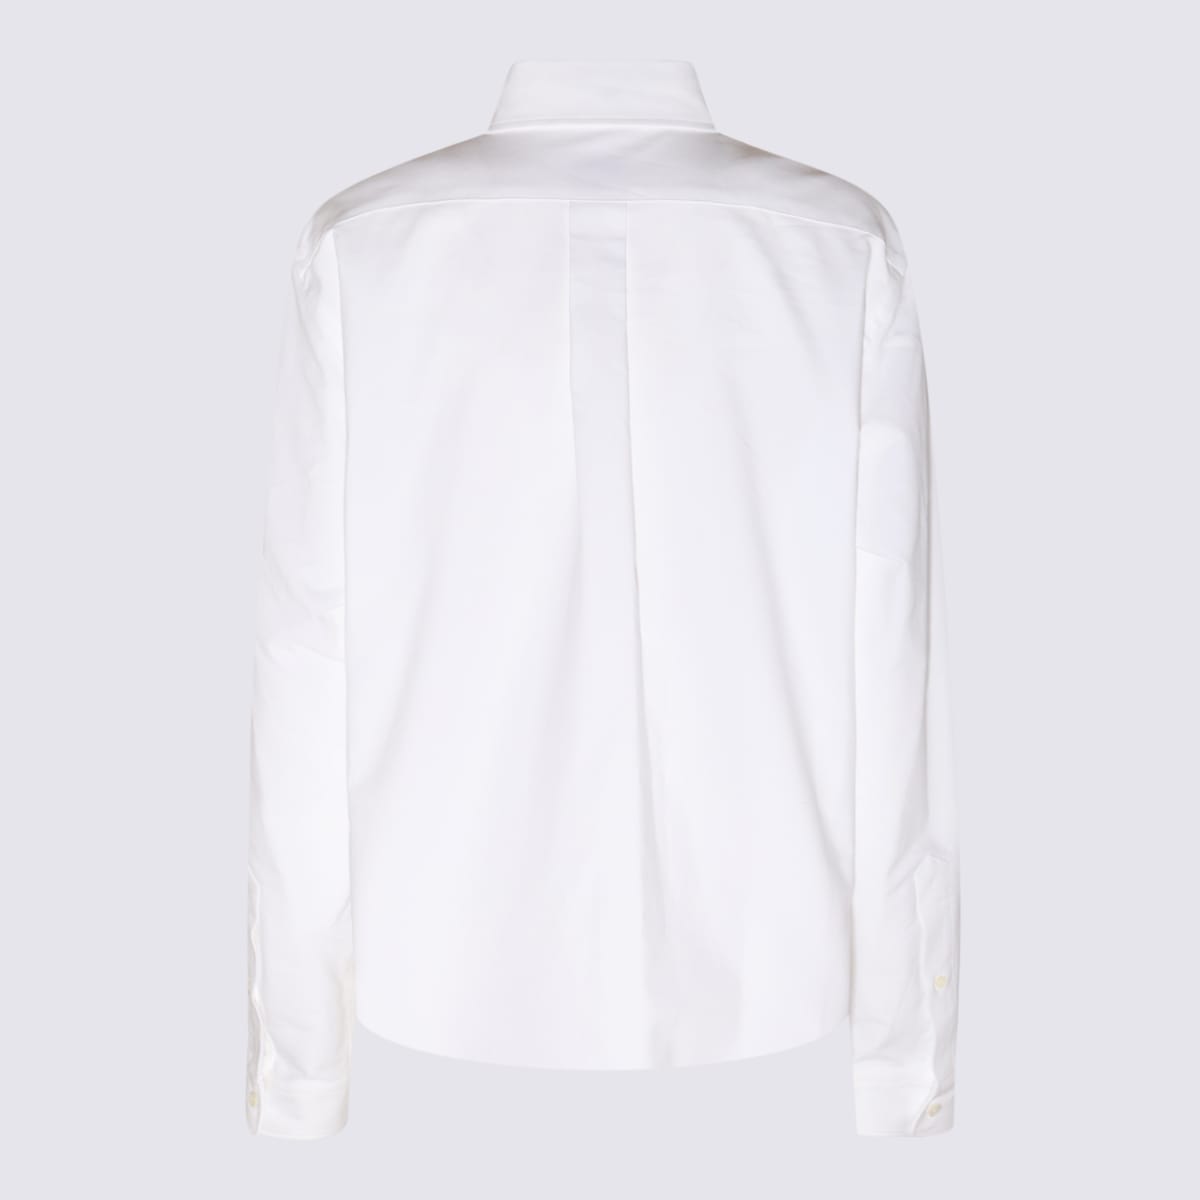 Shop Kenzo White Cotton Boke Flower Shirt